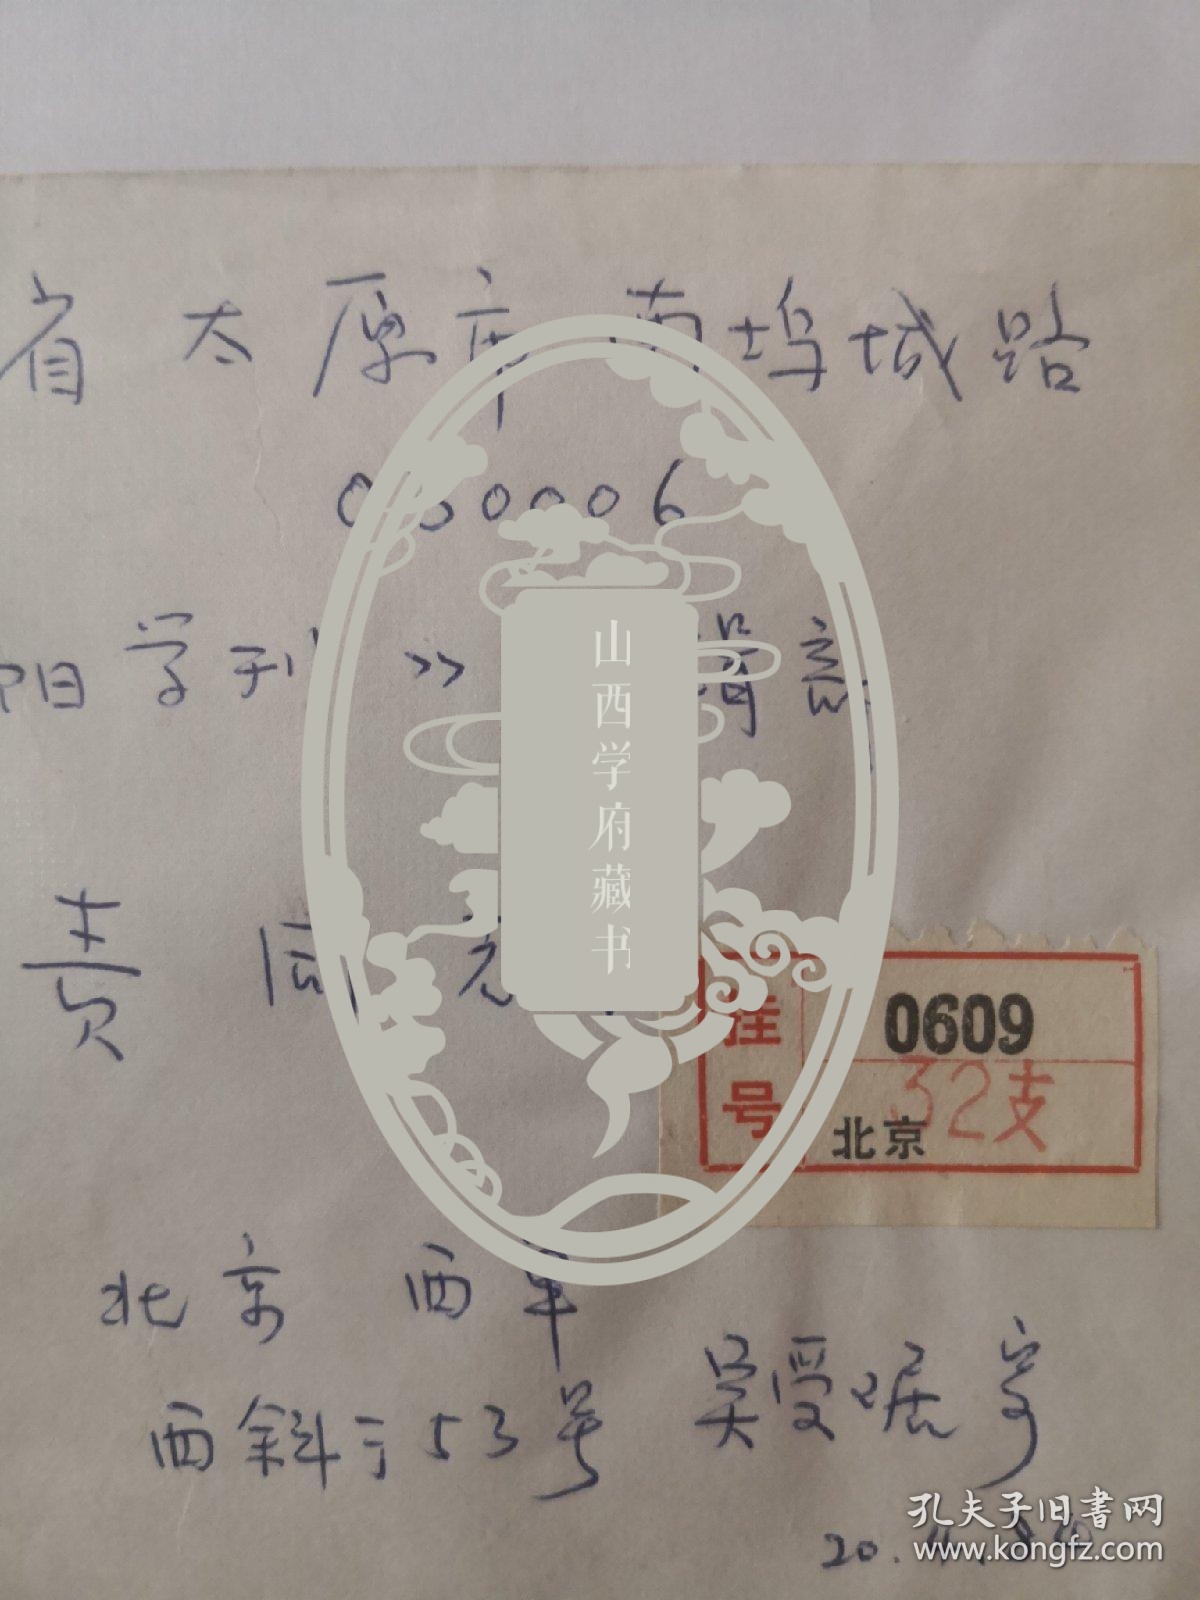 吴受琚先生大札一通一页含实寄封，用中国社会科学院哲学社会科学部世界宗教研究所信笺。